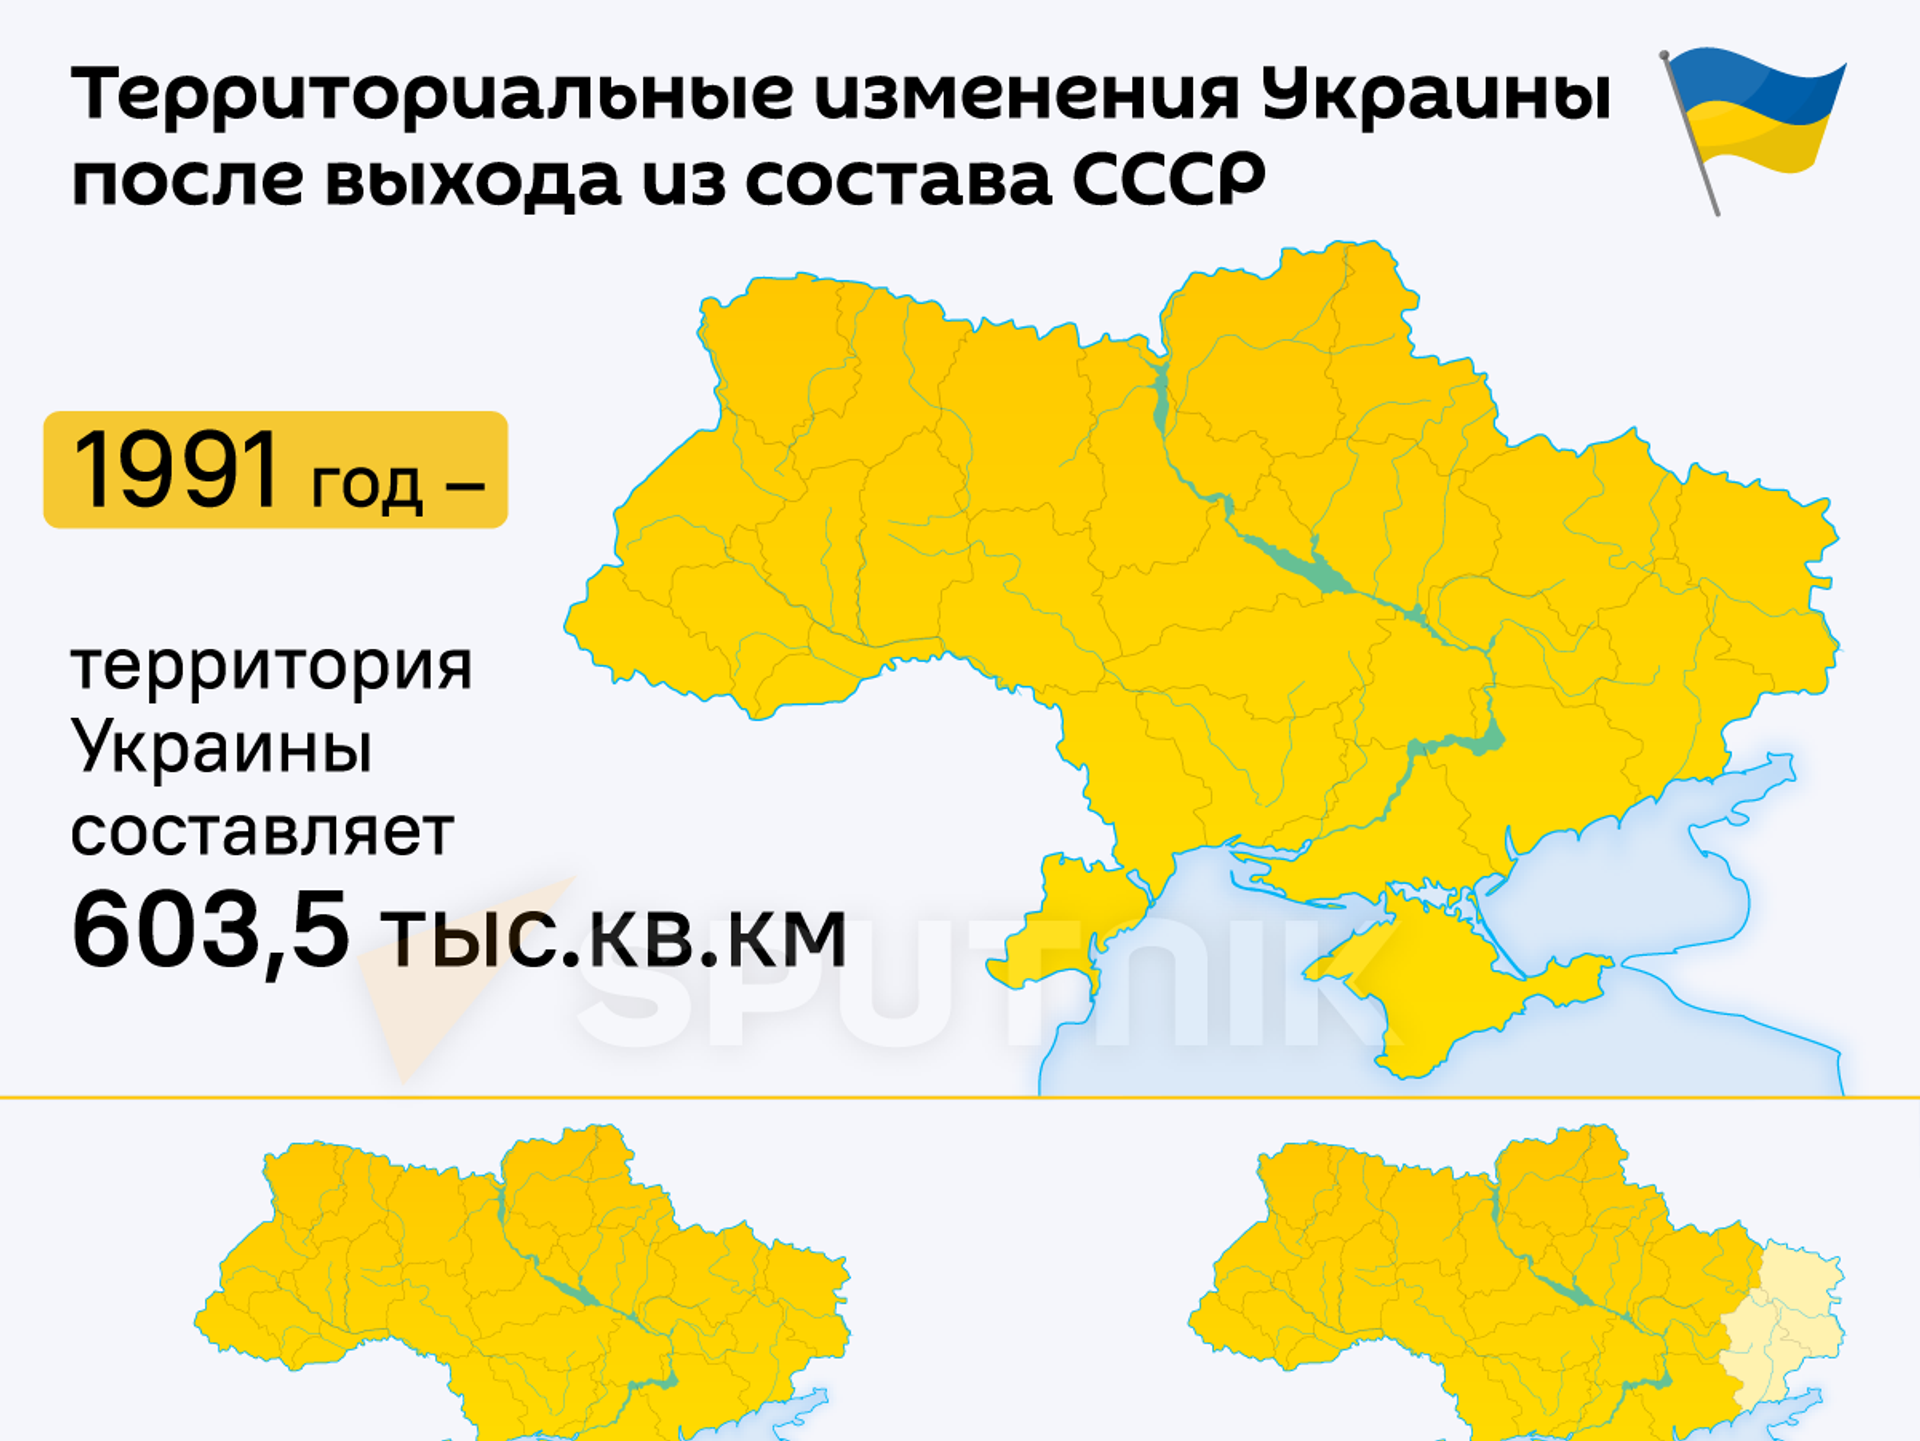 В каком году признали украину украиной. Территрория уарпинв. Территория Укран. Территория Украины 2014 года. Территория Украины 1991 года.